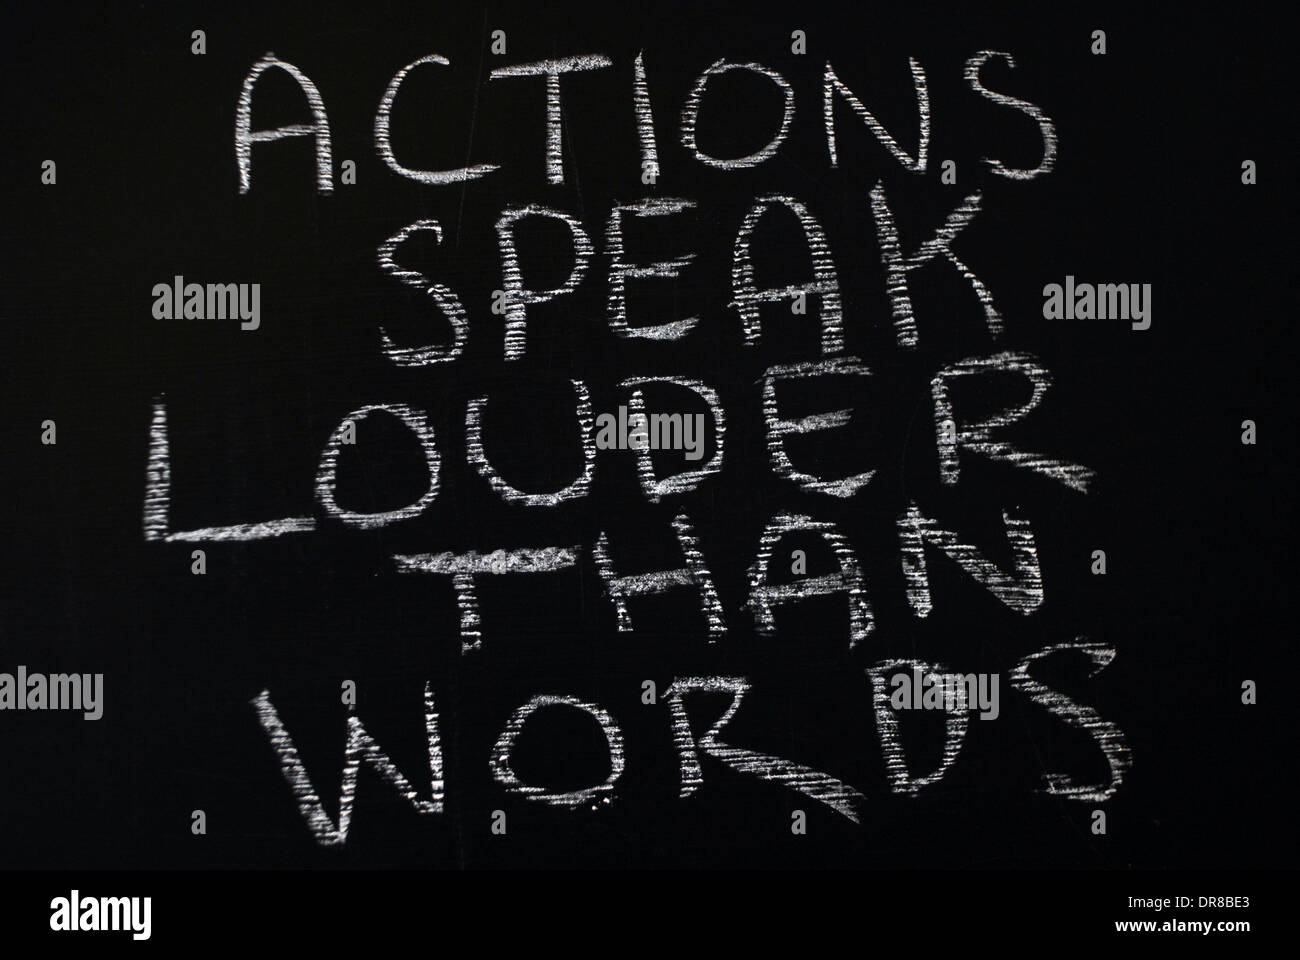 Chalk escrito - las acciones hablan más que las palabras. - Las palabras escritas en la pizarra. Foto de stock